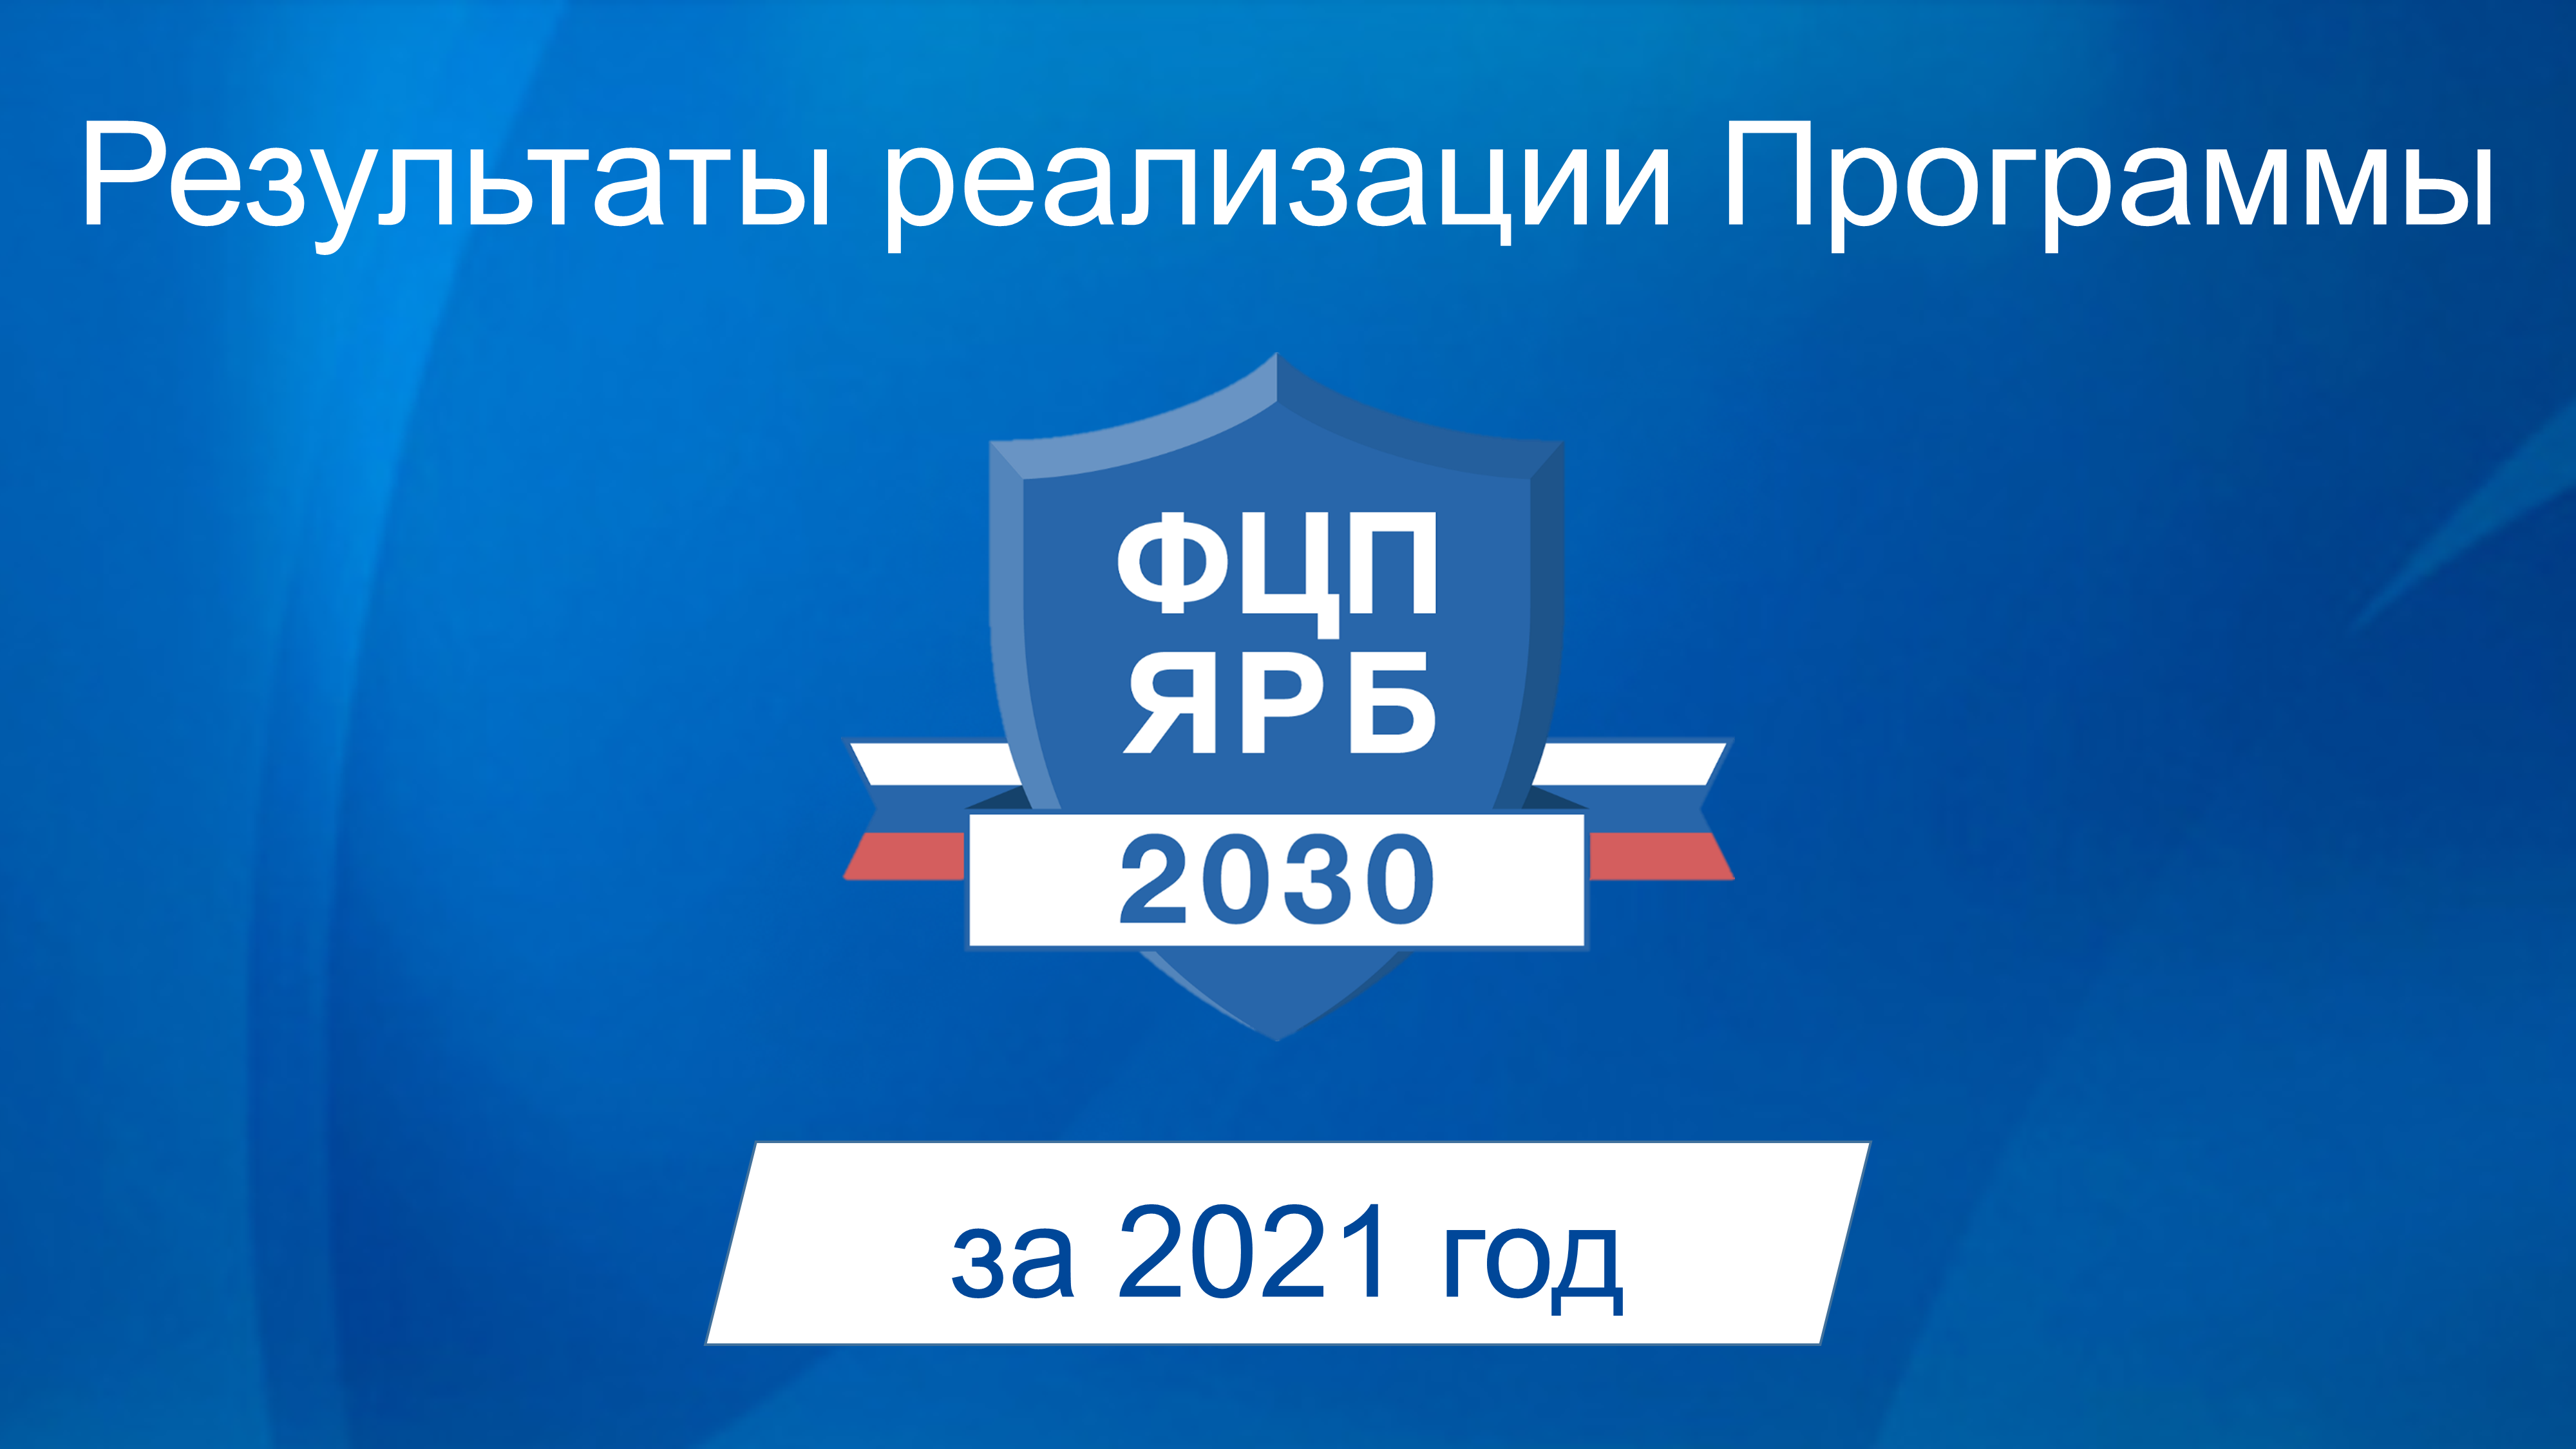 Результаты реализации Программы за 2021 год